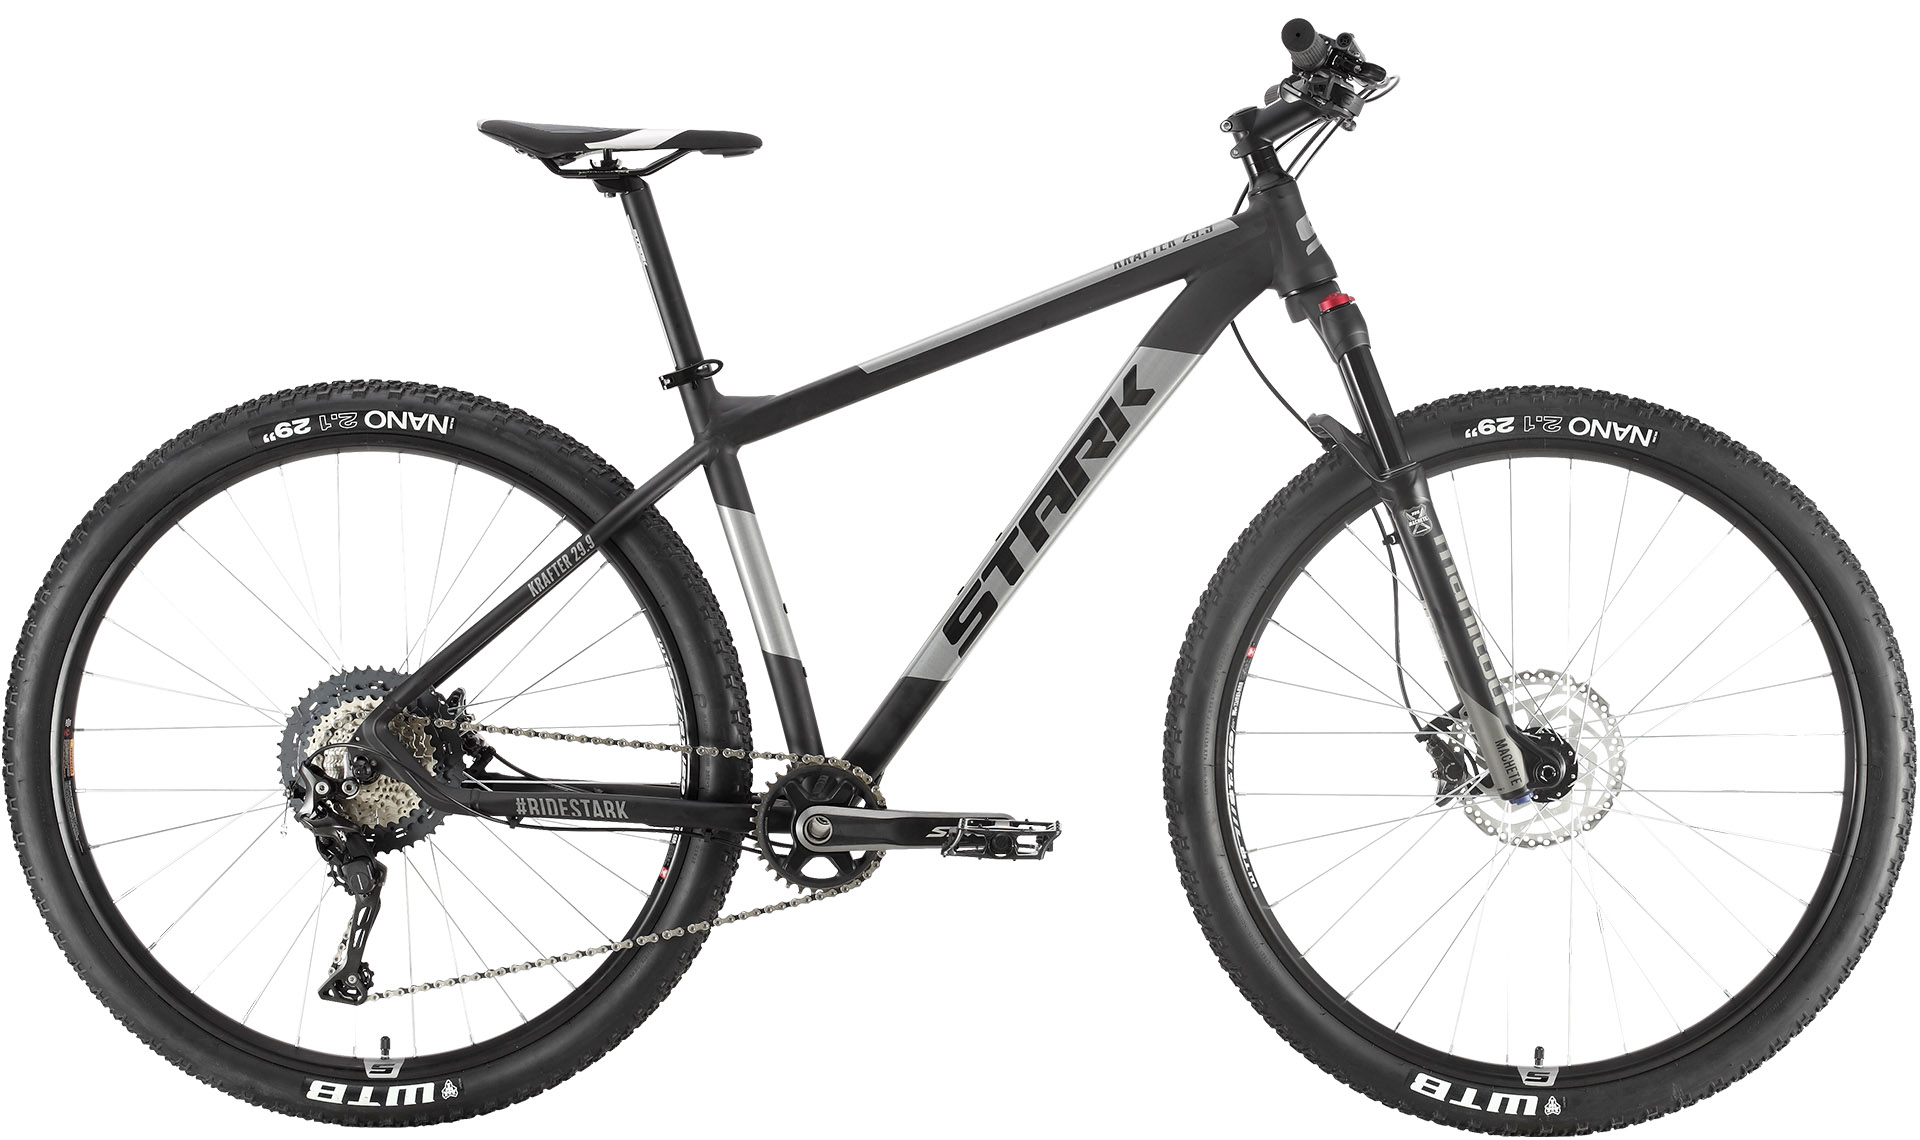  Отзывы о Горном велосипеде Stark Krafter 29.9 HD XT 2020